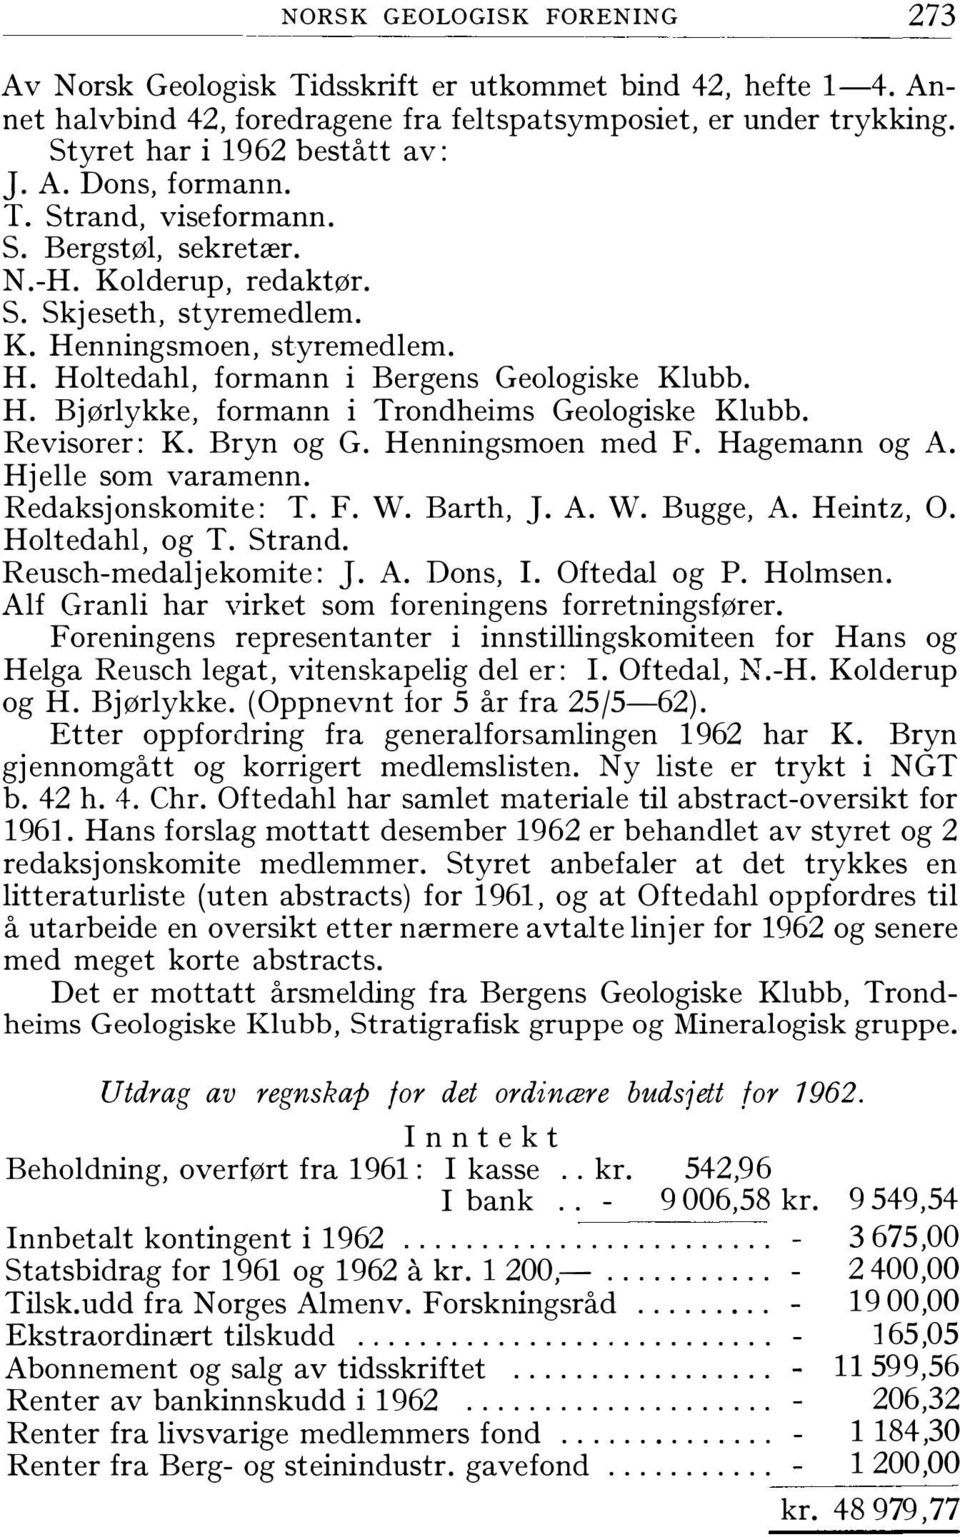 Revisorer: K. Bryn og G. Henningsmoen med F. Hagemann og A. Hjelle som varamenn. Redaksjonskomite: T. F. W. Barth, J. A. W. Bugge, A. Heintz, O. Holtedahl, og T. Strand. Reusch-medaljekomite: J. A. Dons, I.